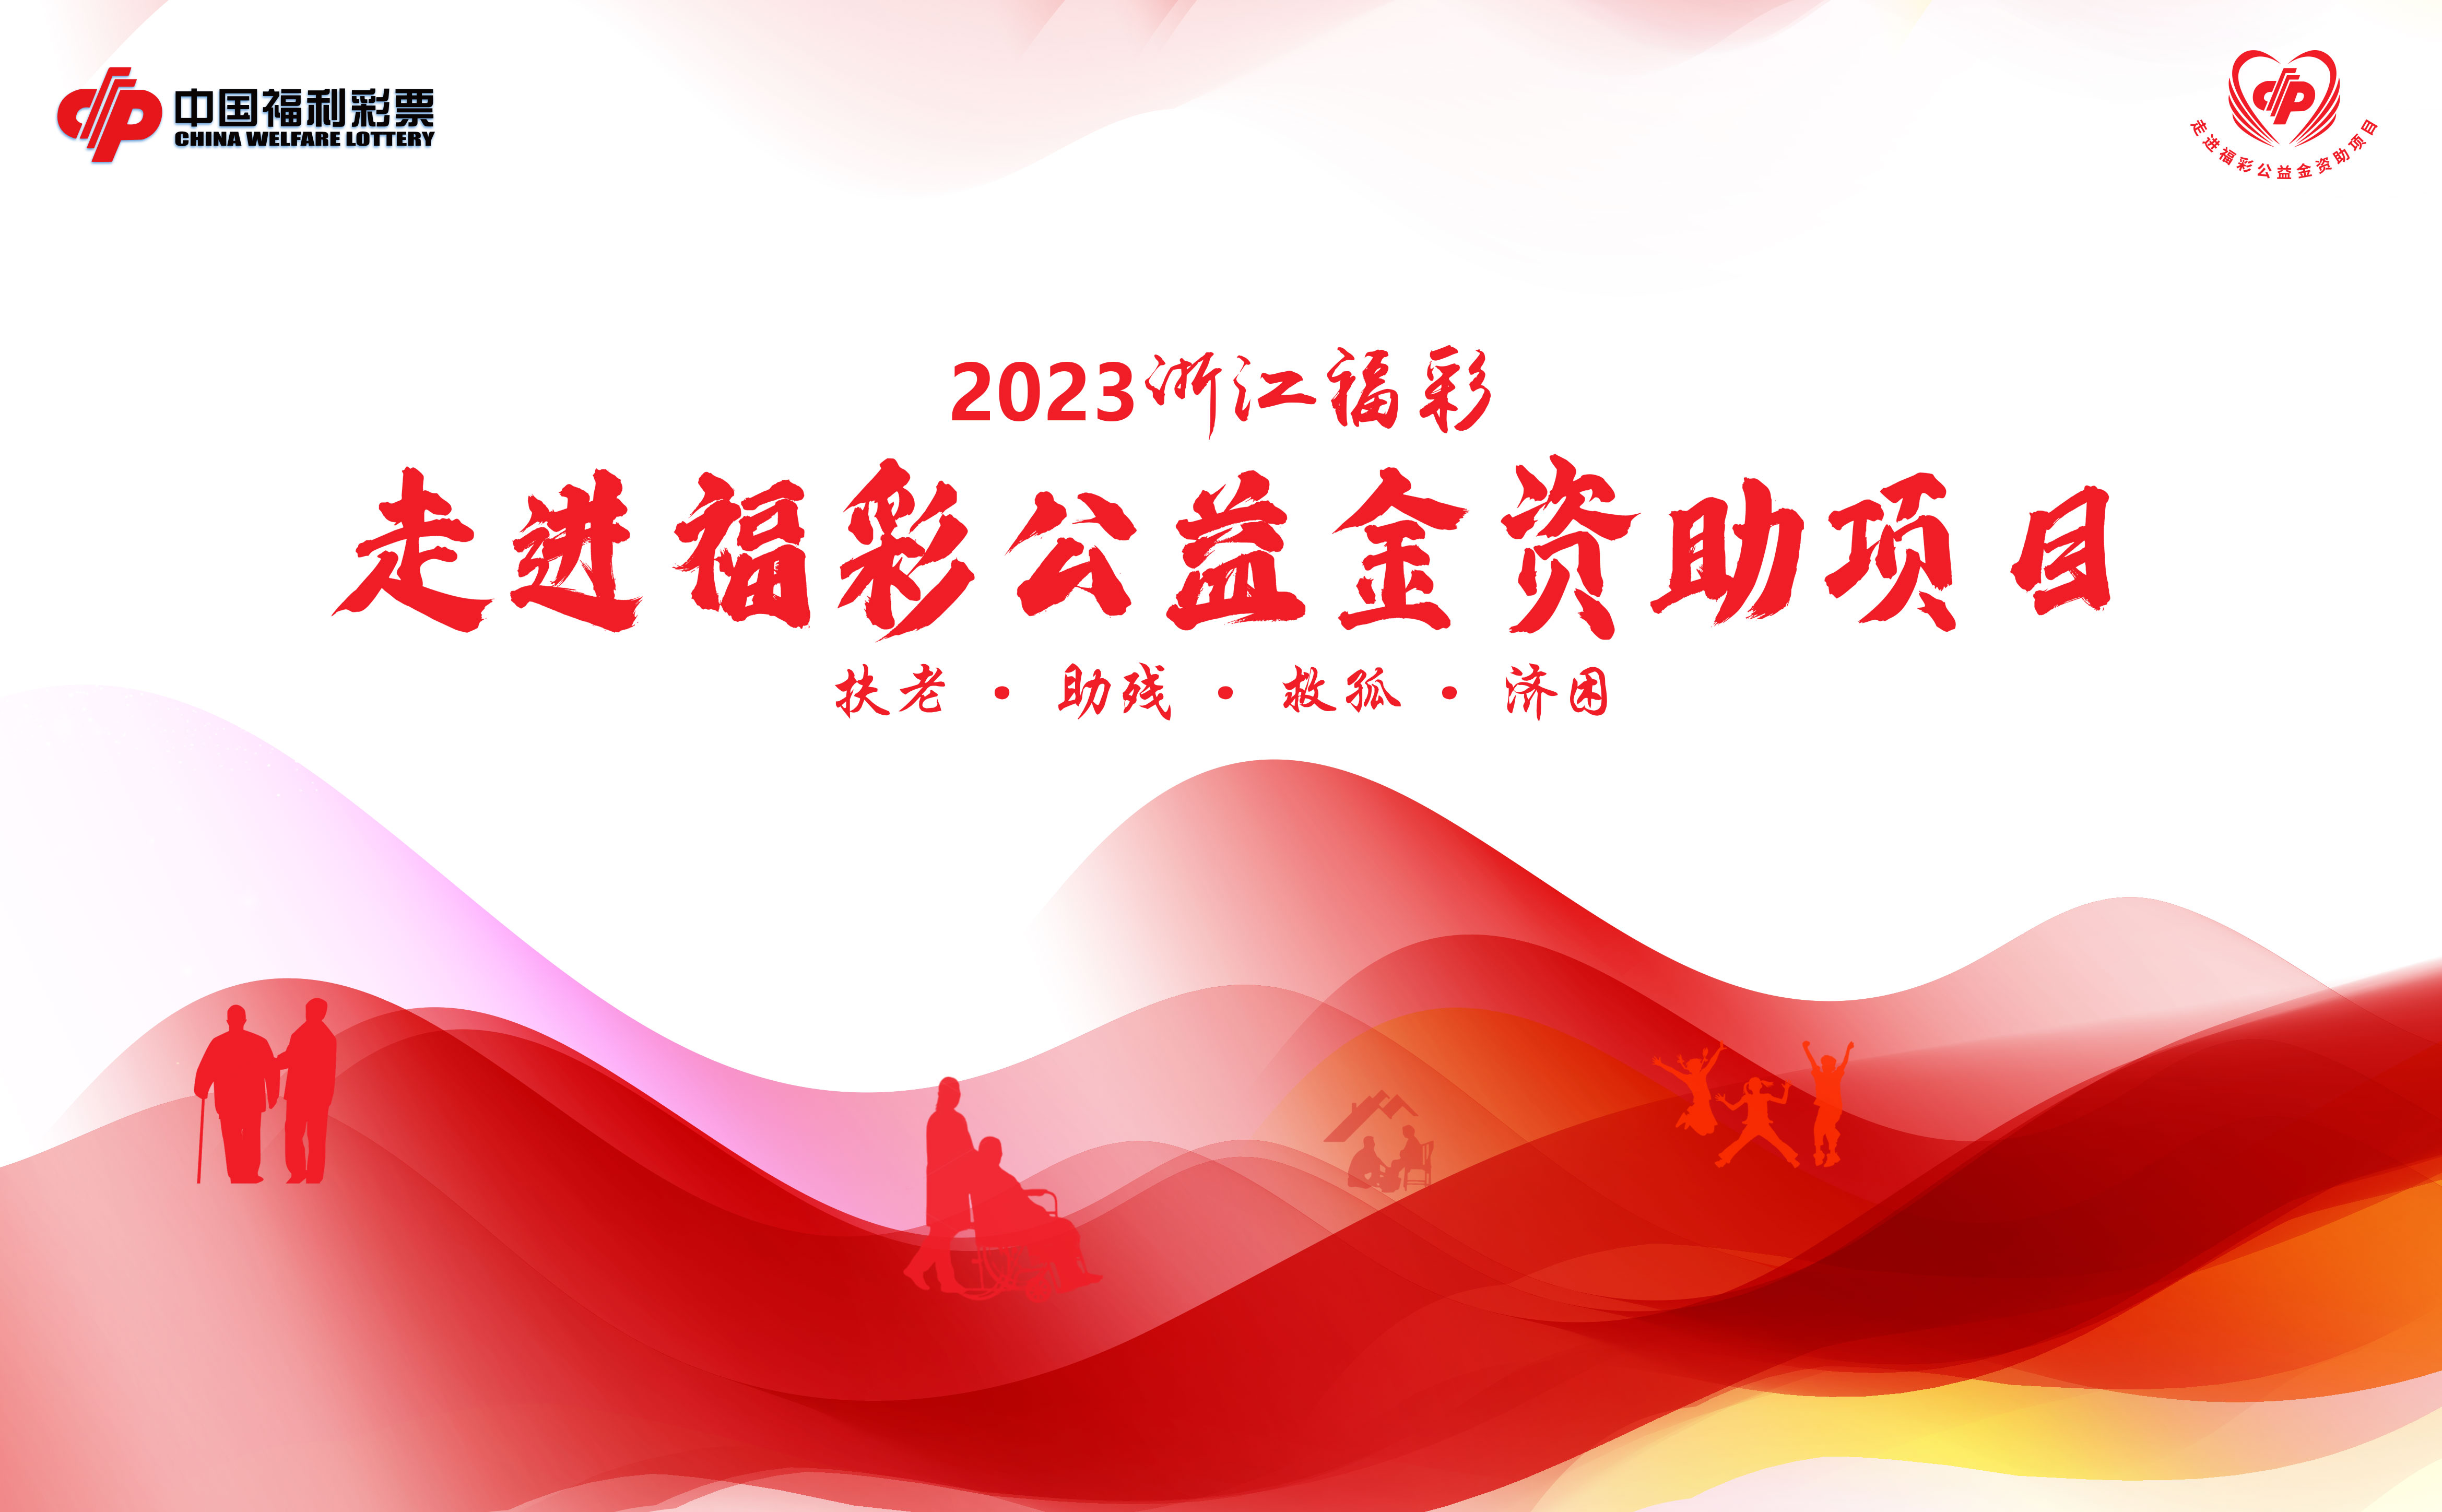 【專題】2023浙江福彩走進福彩公益金資助項目